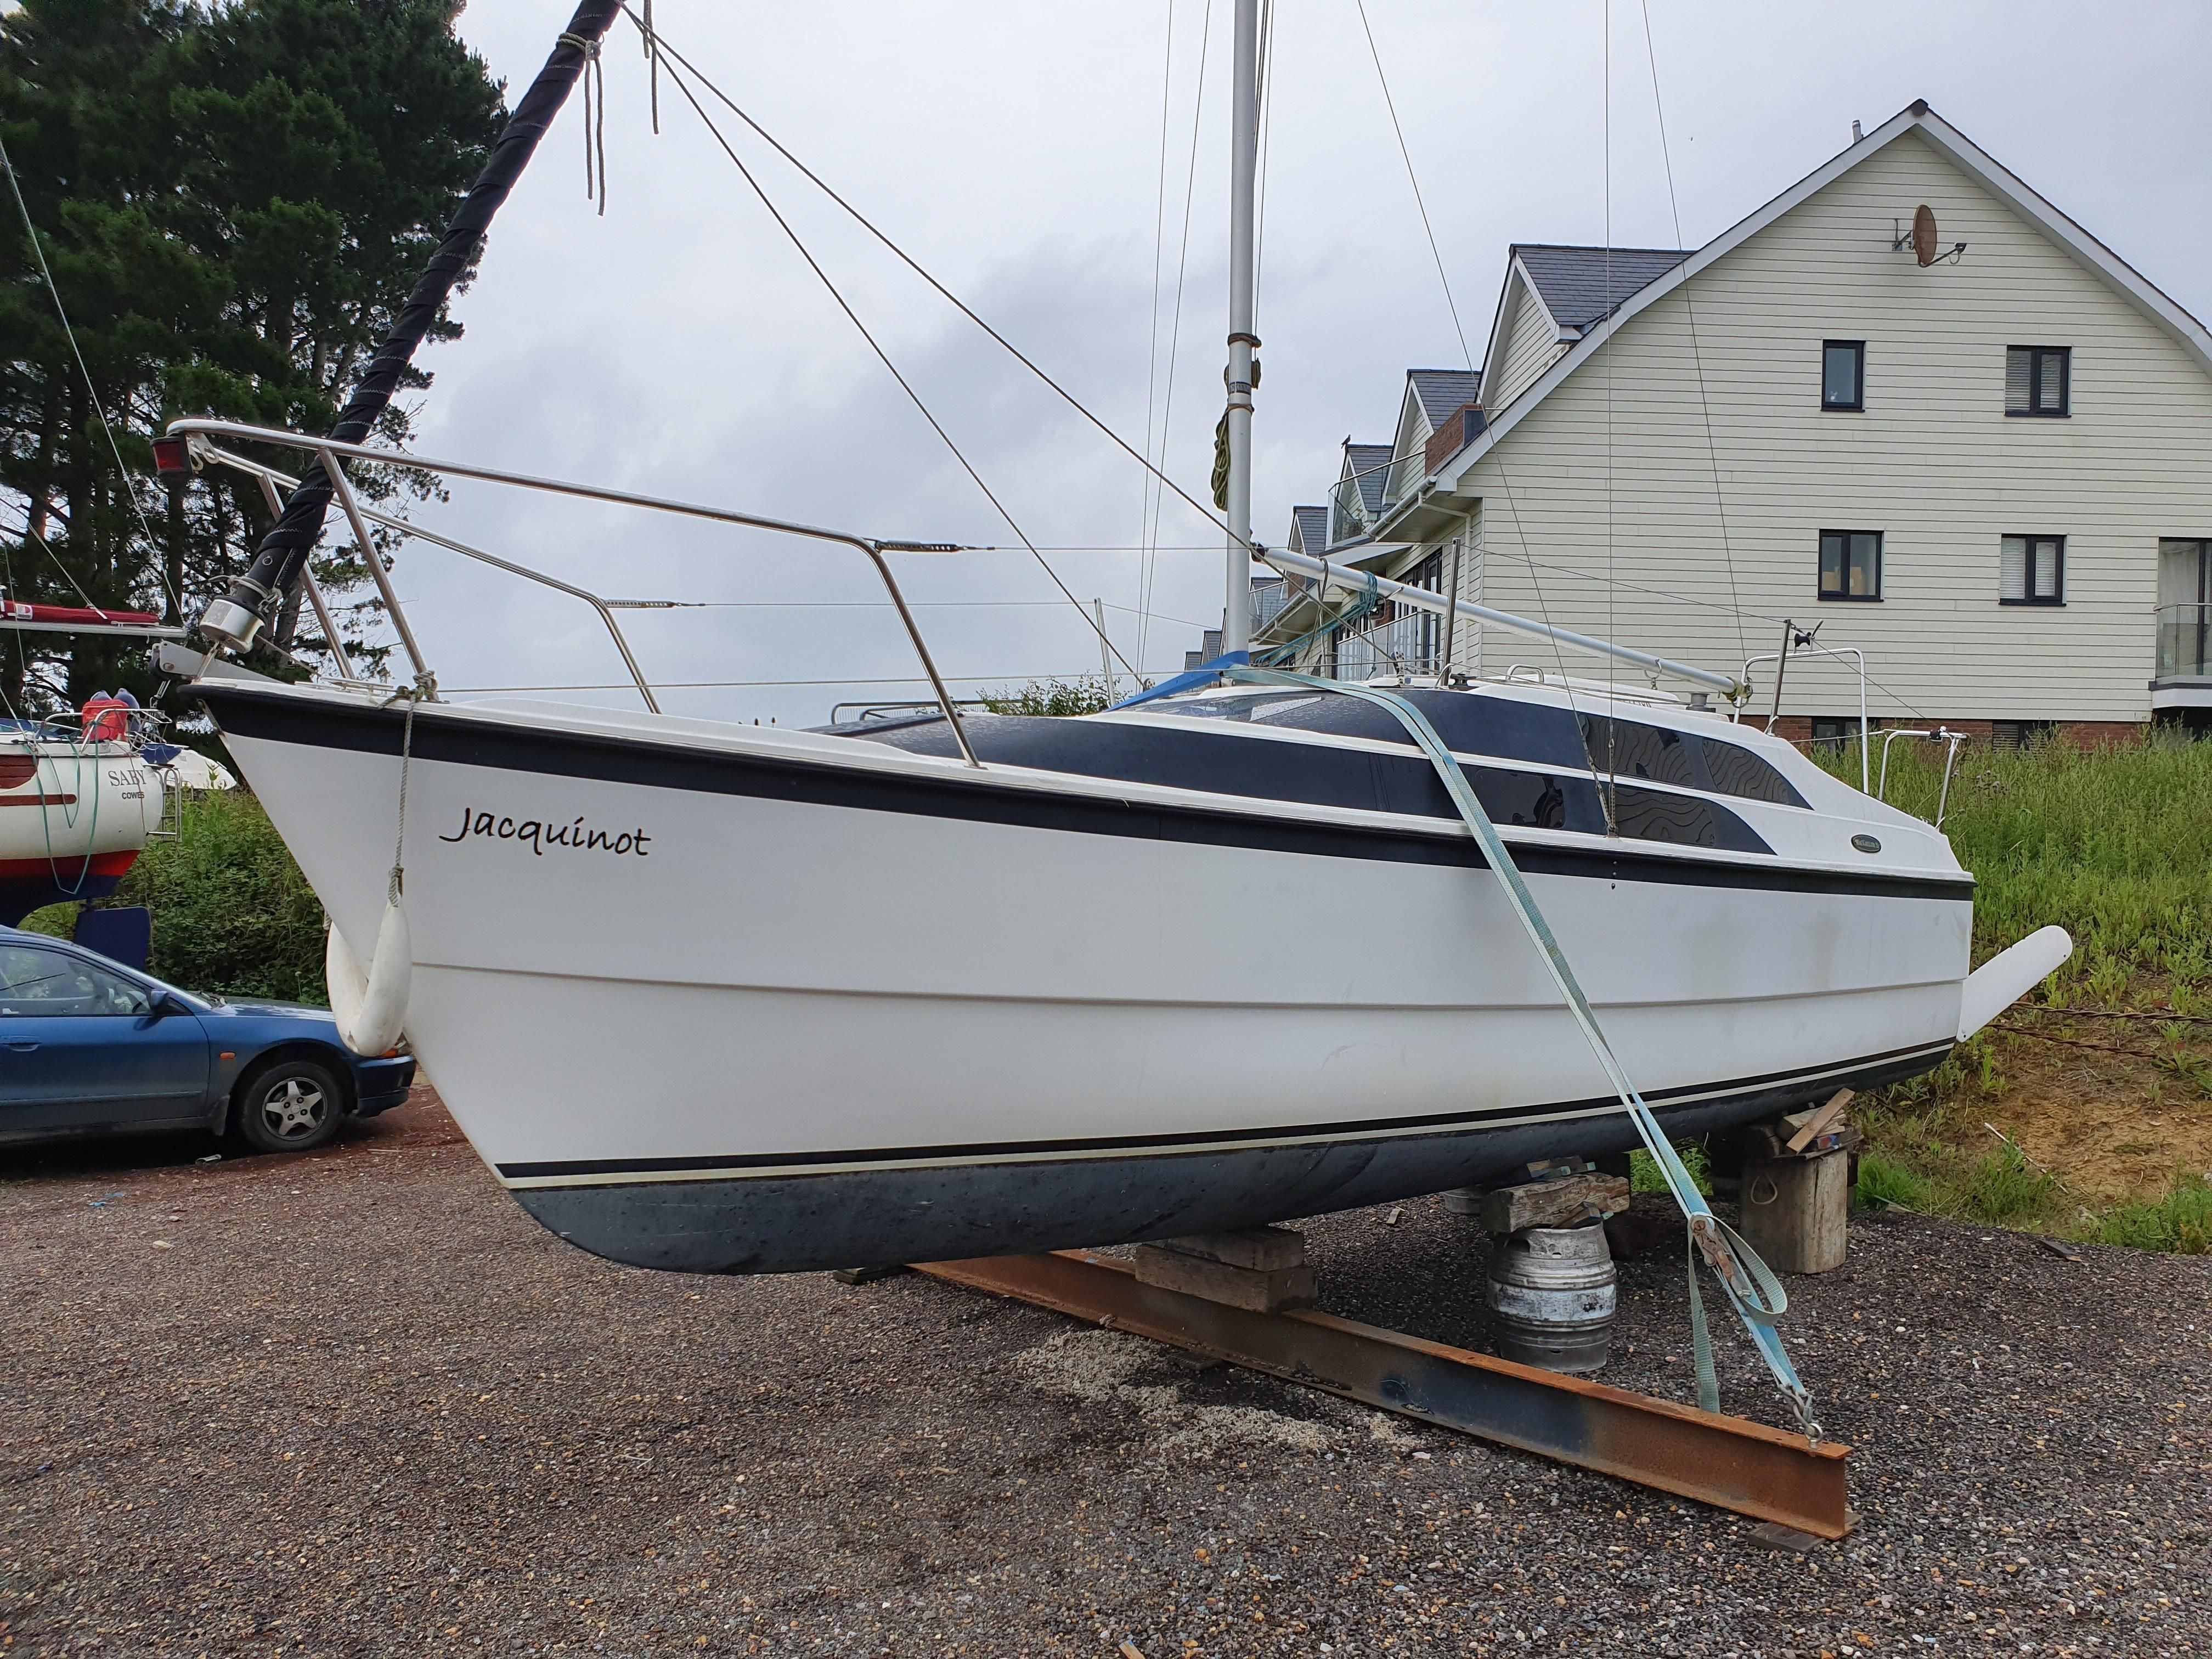 macgregor 26 ft sailboat for sale